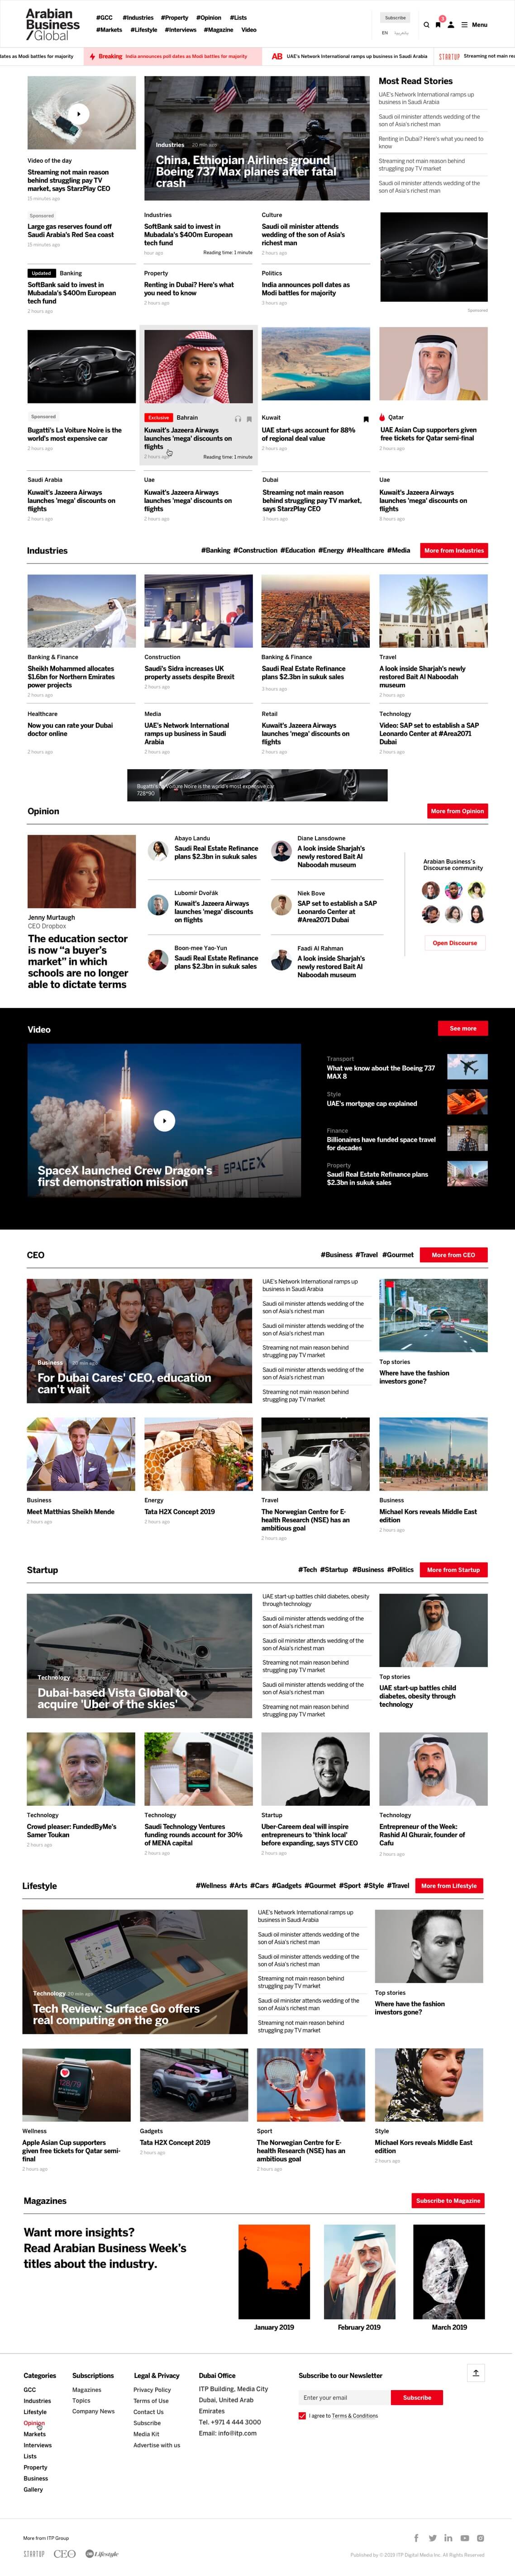 Arabian Business - Homepage.jpg